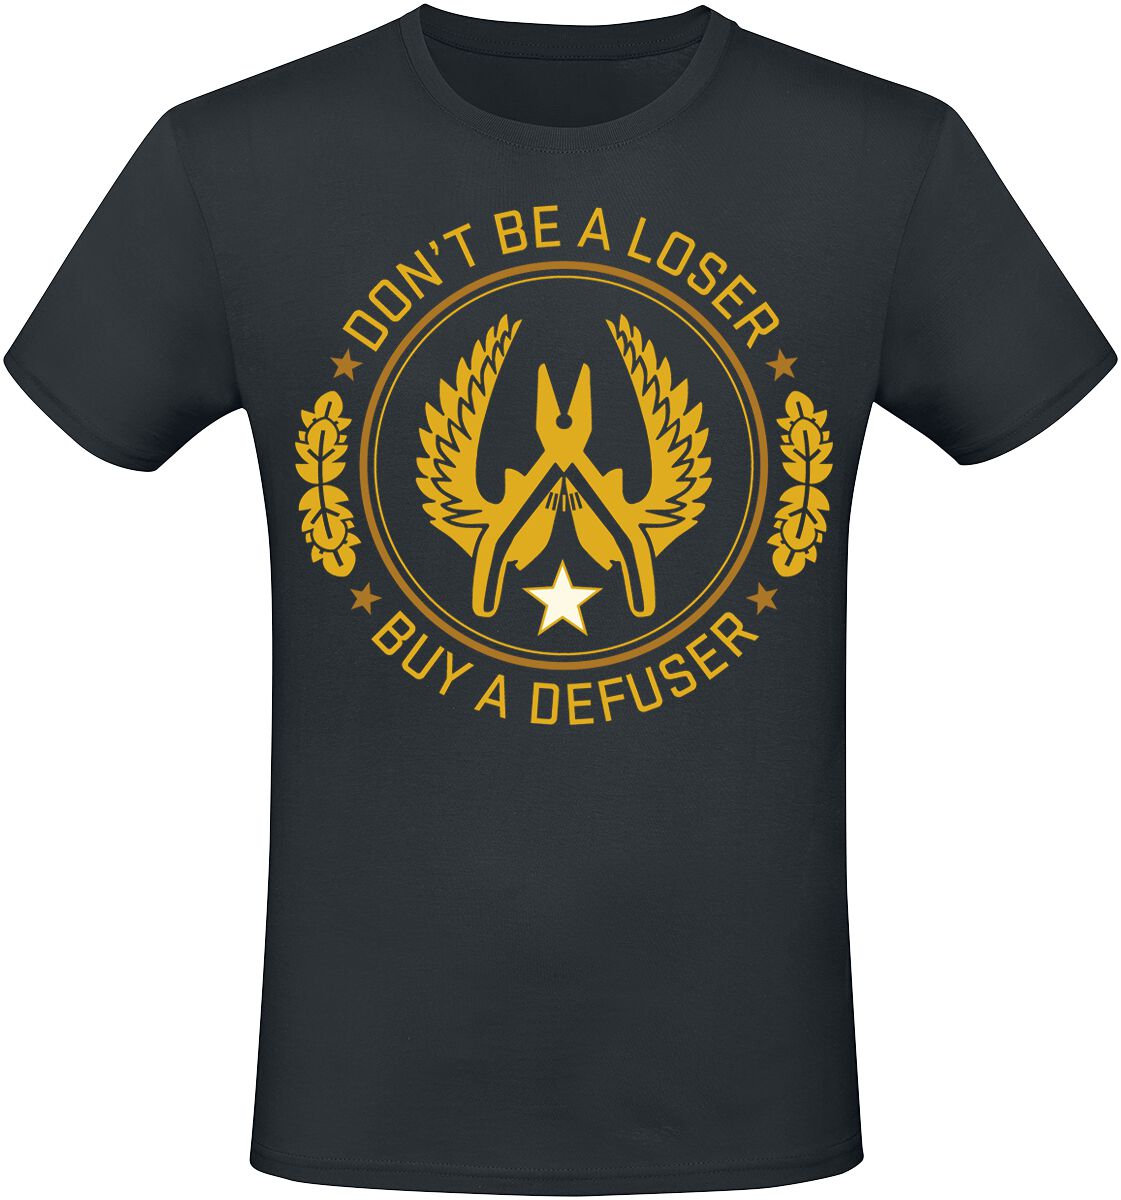 Counter-Strike - Gaming T-Shirt - 2 - Defuser - S bis XXL - für Männer - Größe S - schwarz  - EMP exklusives Merchandise!